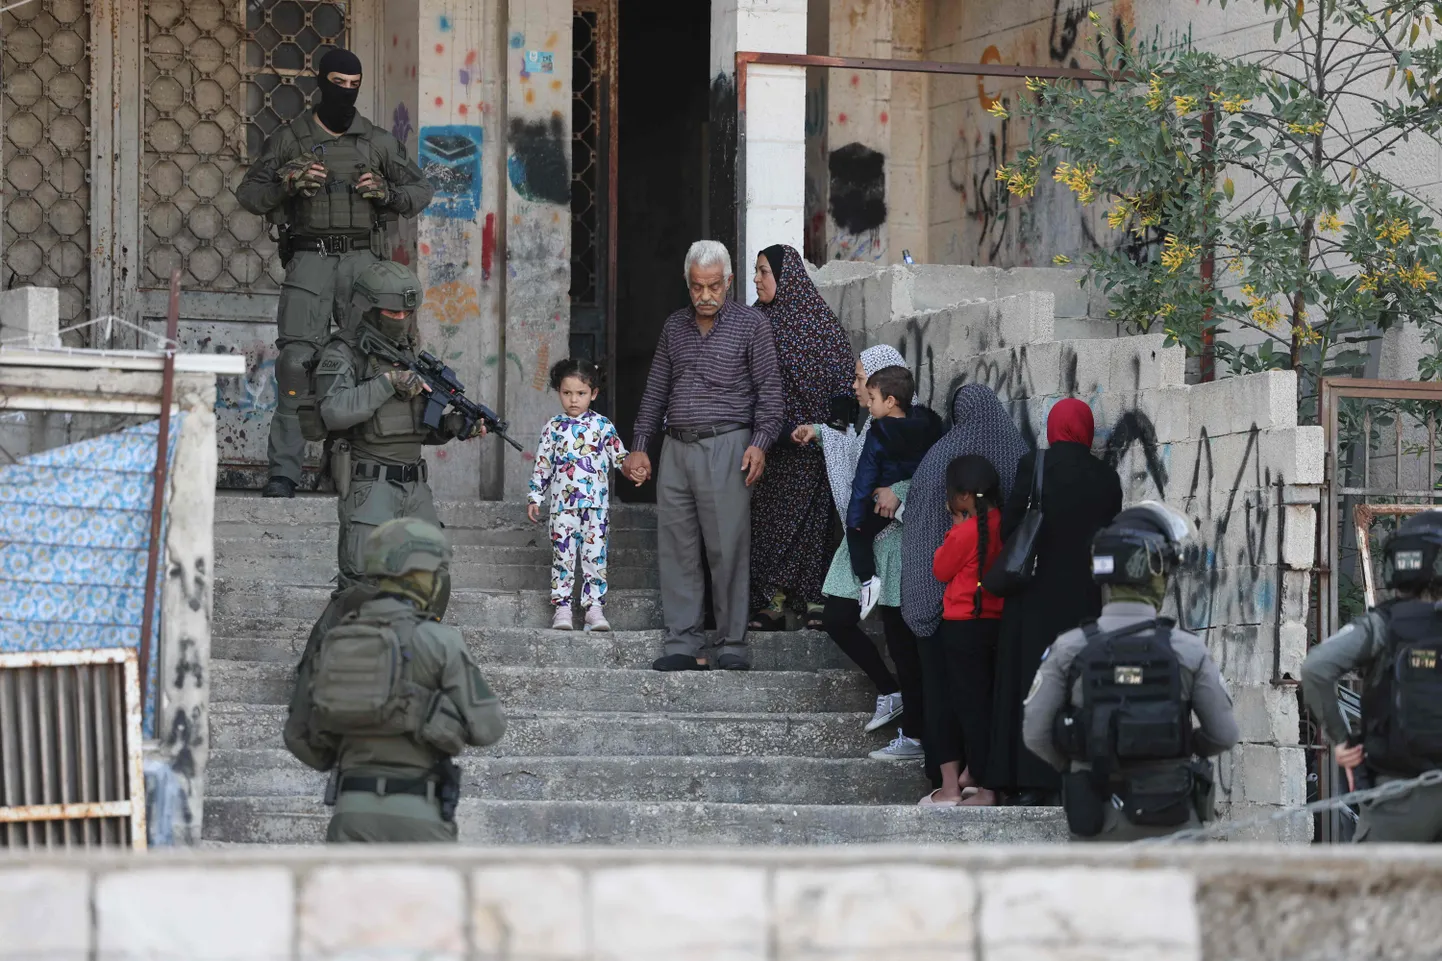 Palestiina perekonnal tuleb oodata, kuni Iisraeli julgeolekujõud korraldavad läbiotsimist, et tabada arvatav tulistaja annekteeritud Ida-Jeruusalemmas Sheikh Jarrah linnaosas.